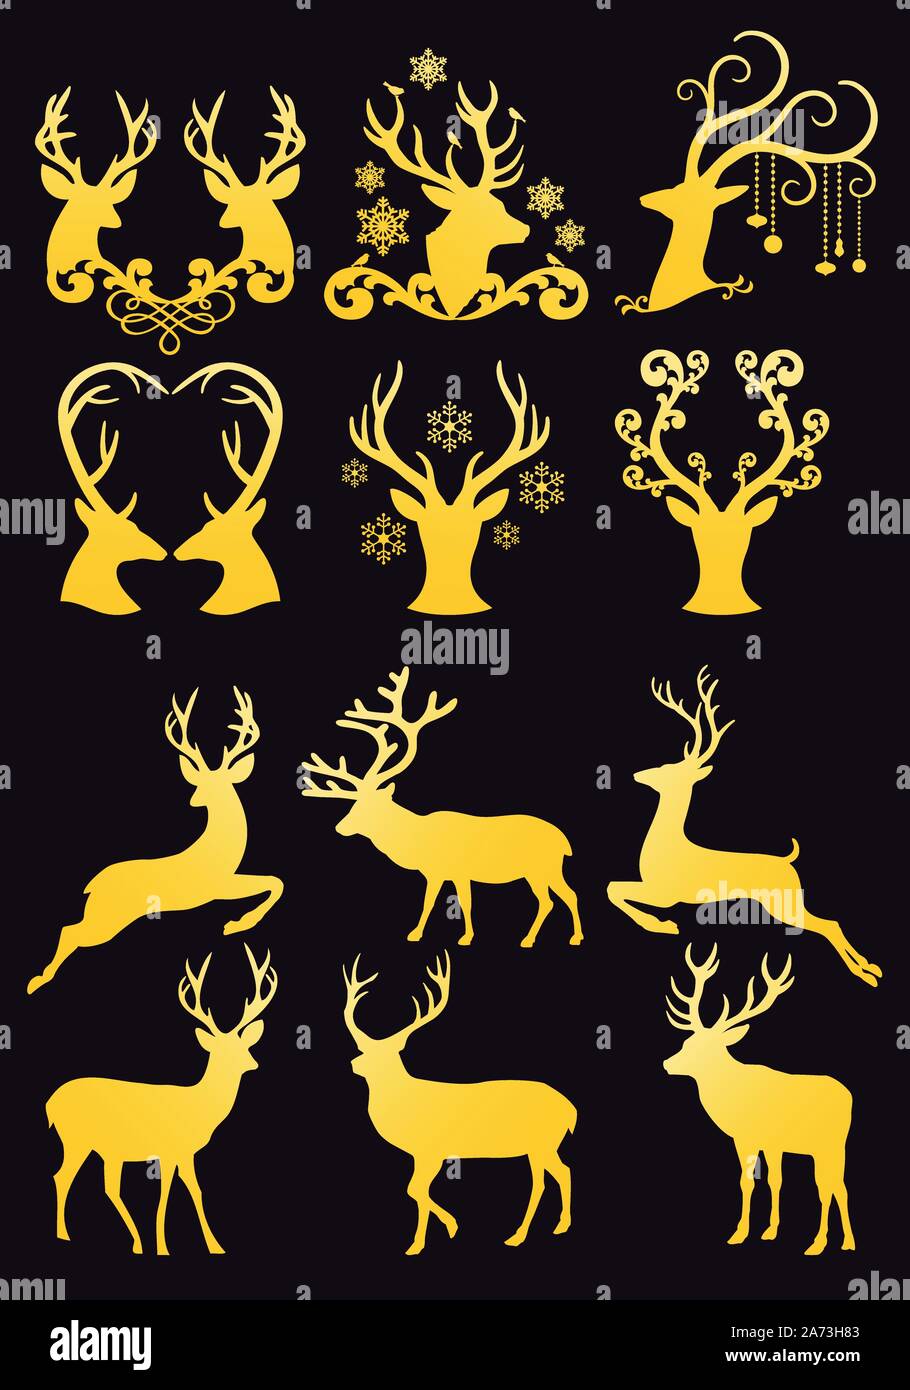 Gold Weihnachten reh Köpfe, goldene Rentier Silhouetten für Karten, der vektor design Element festlegen Stock Vektor